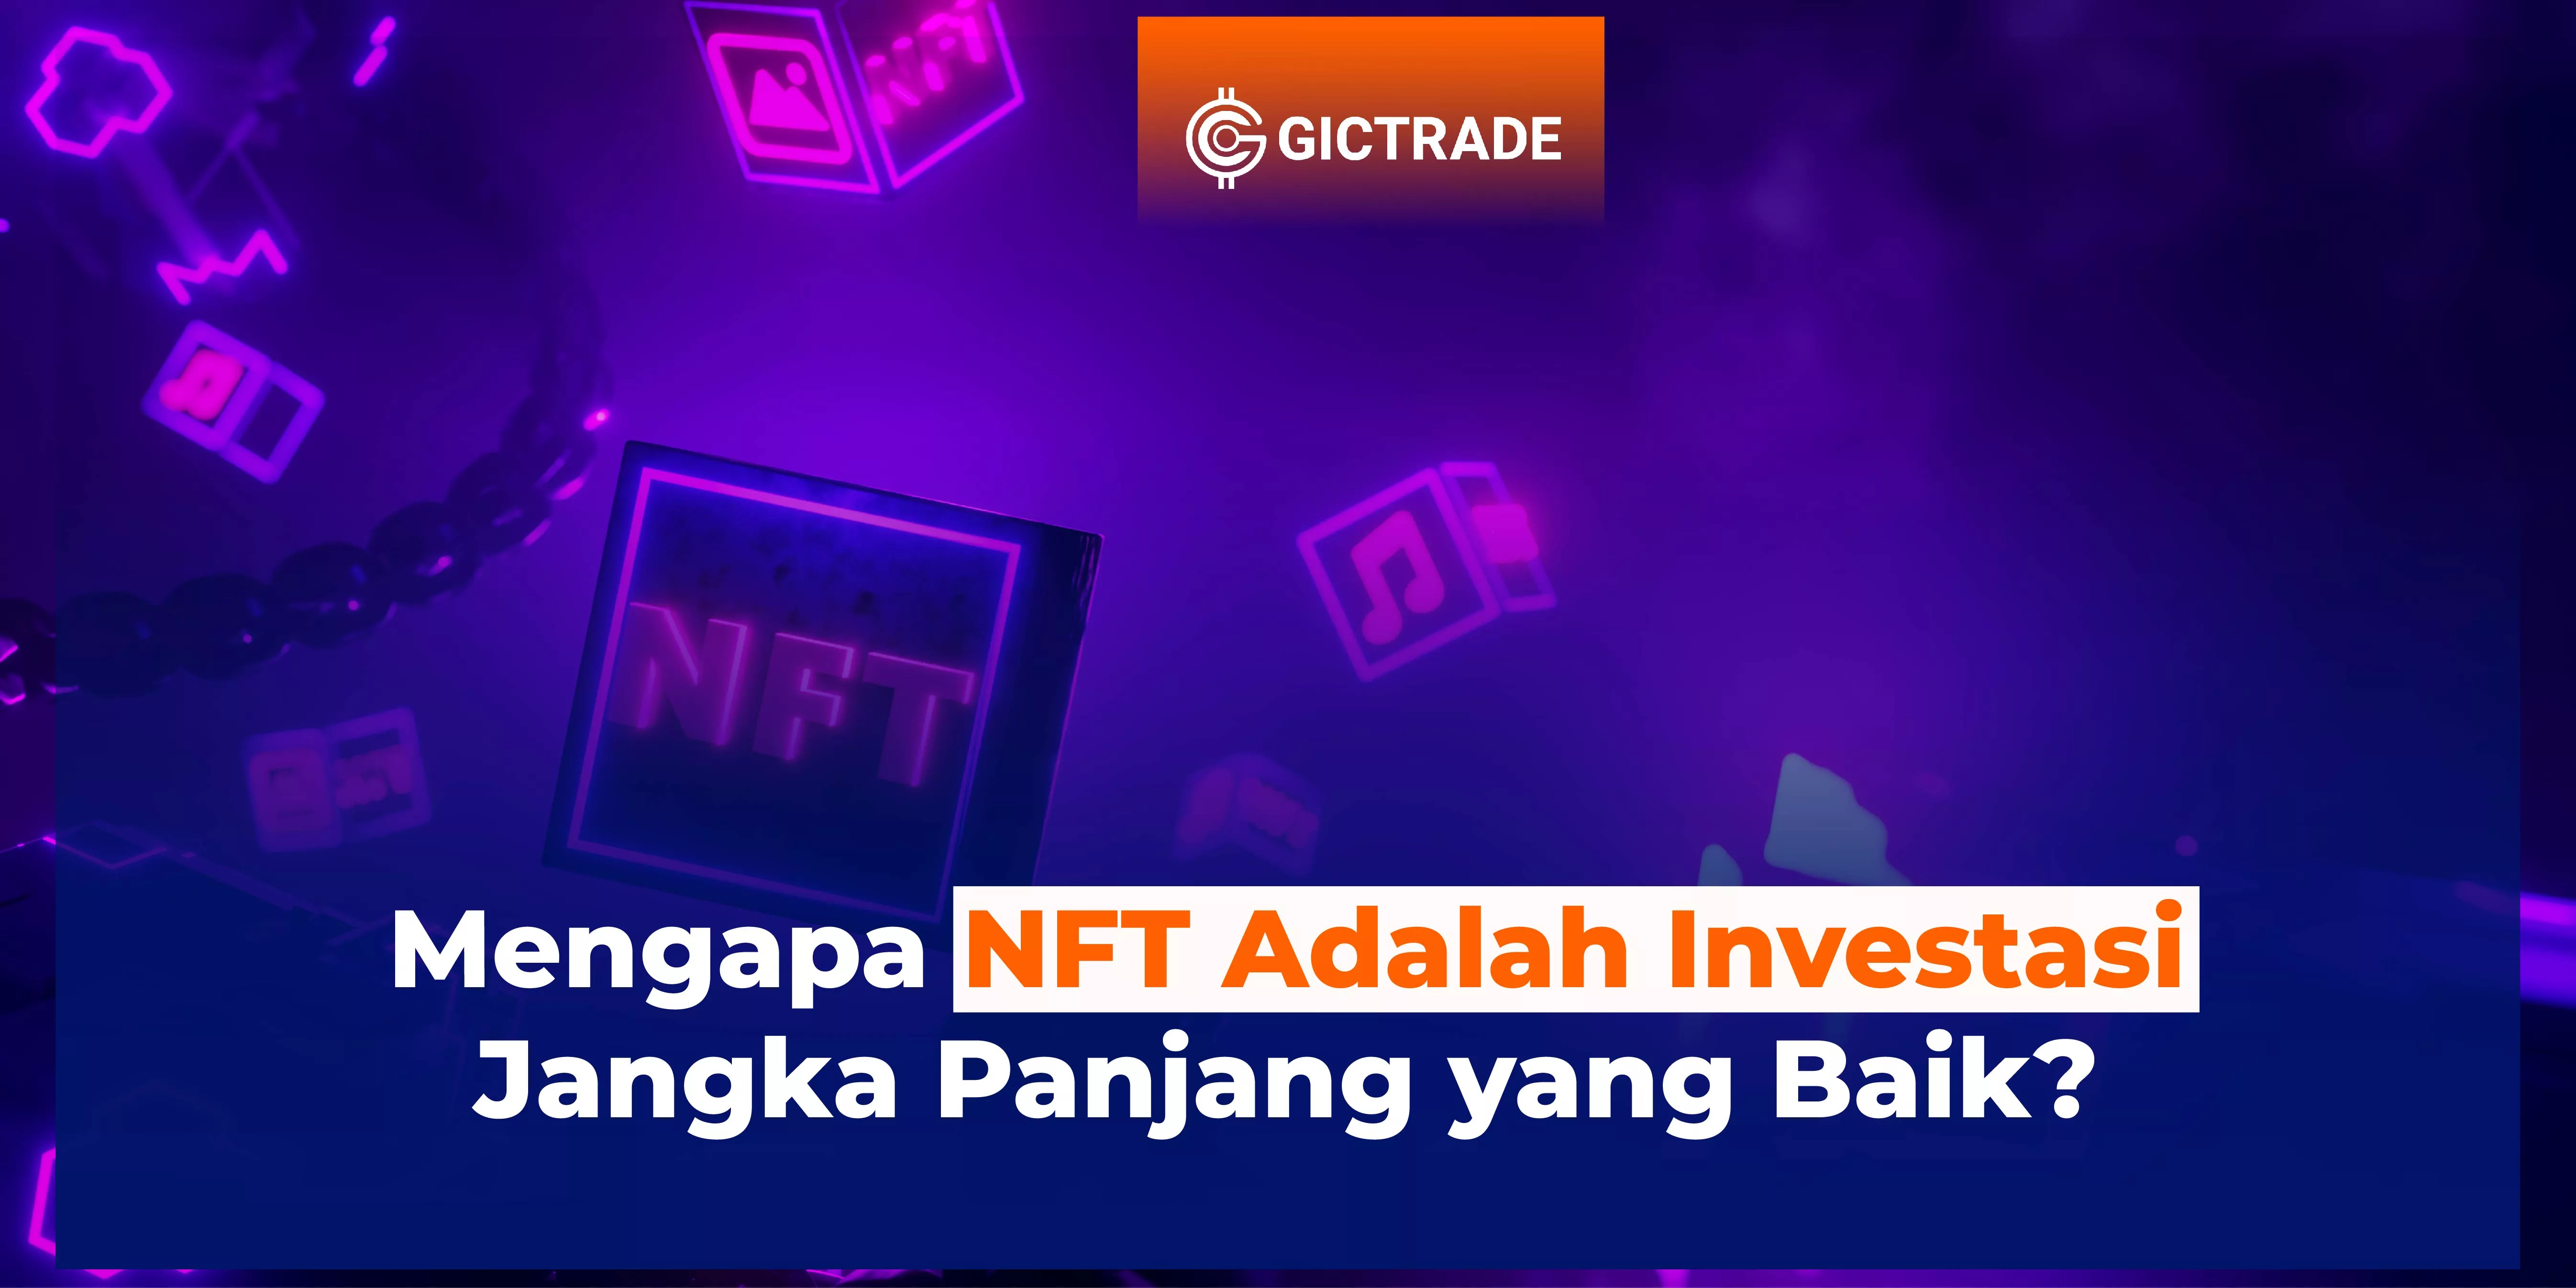 Mengapa NFT Adalah Investasi Jangka Panjang yang Baik